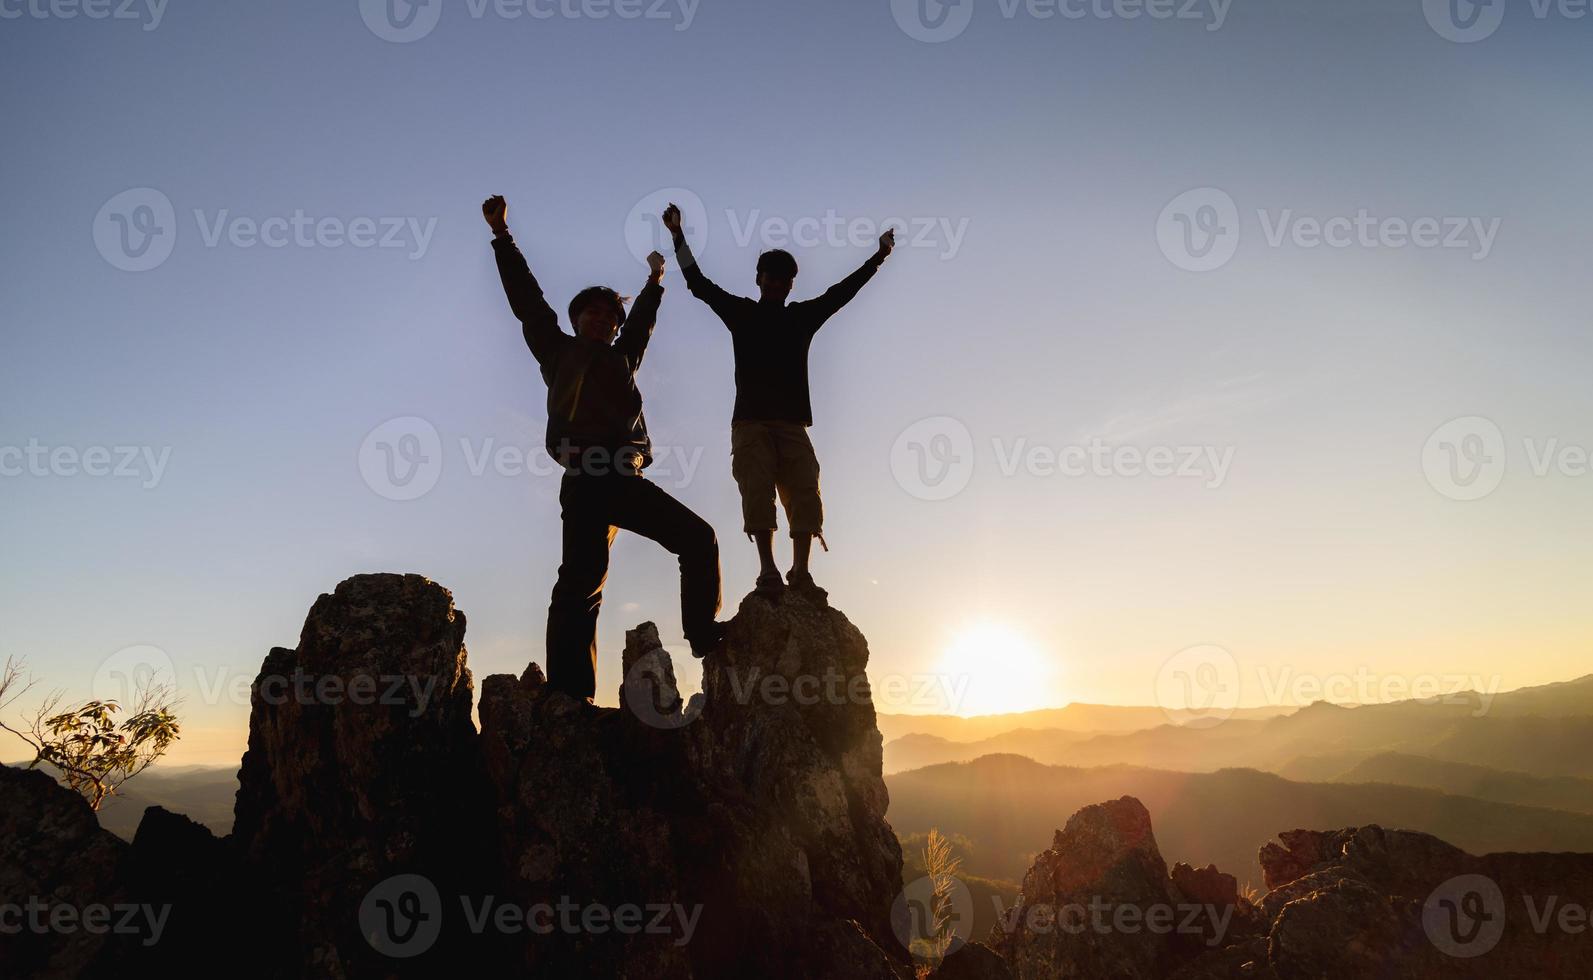 silueta de trabajo en equipo de dos hombres excursionistas ayudándose unos a otros en la parte superior del equipo de montañismo. trabajo en equipo amistad caminatas ayudarse unos a otros confianza asistencia silueta en las montañas, amanecer. foto